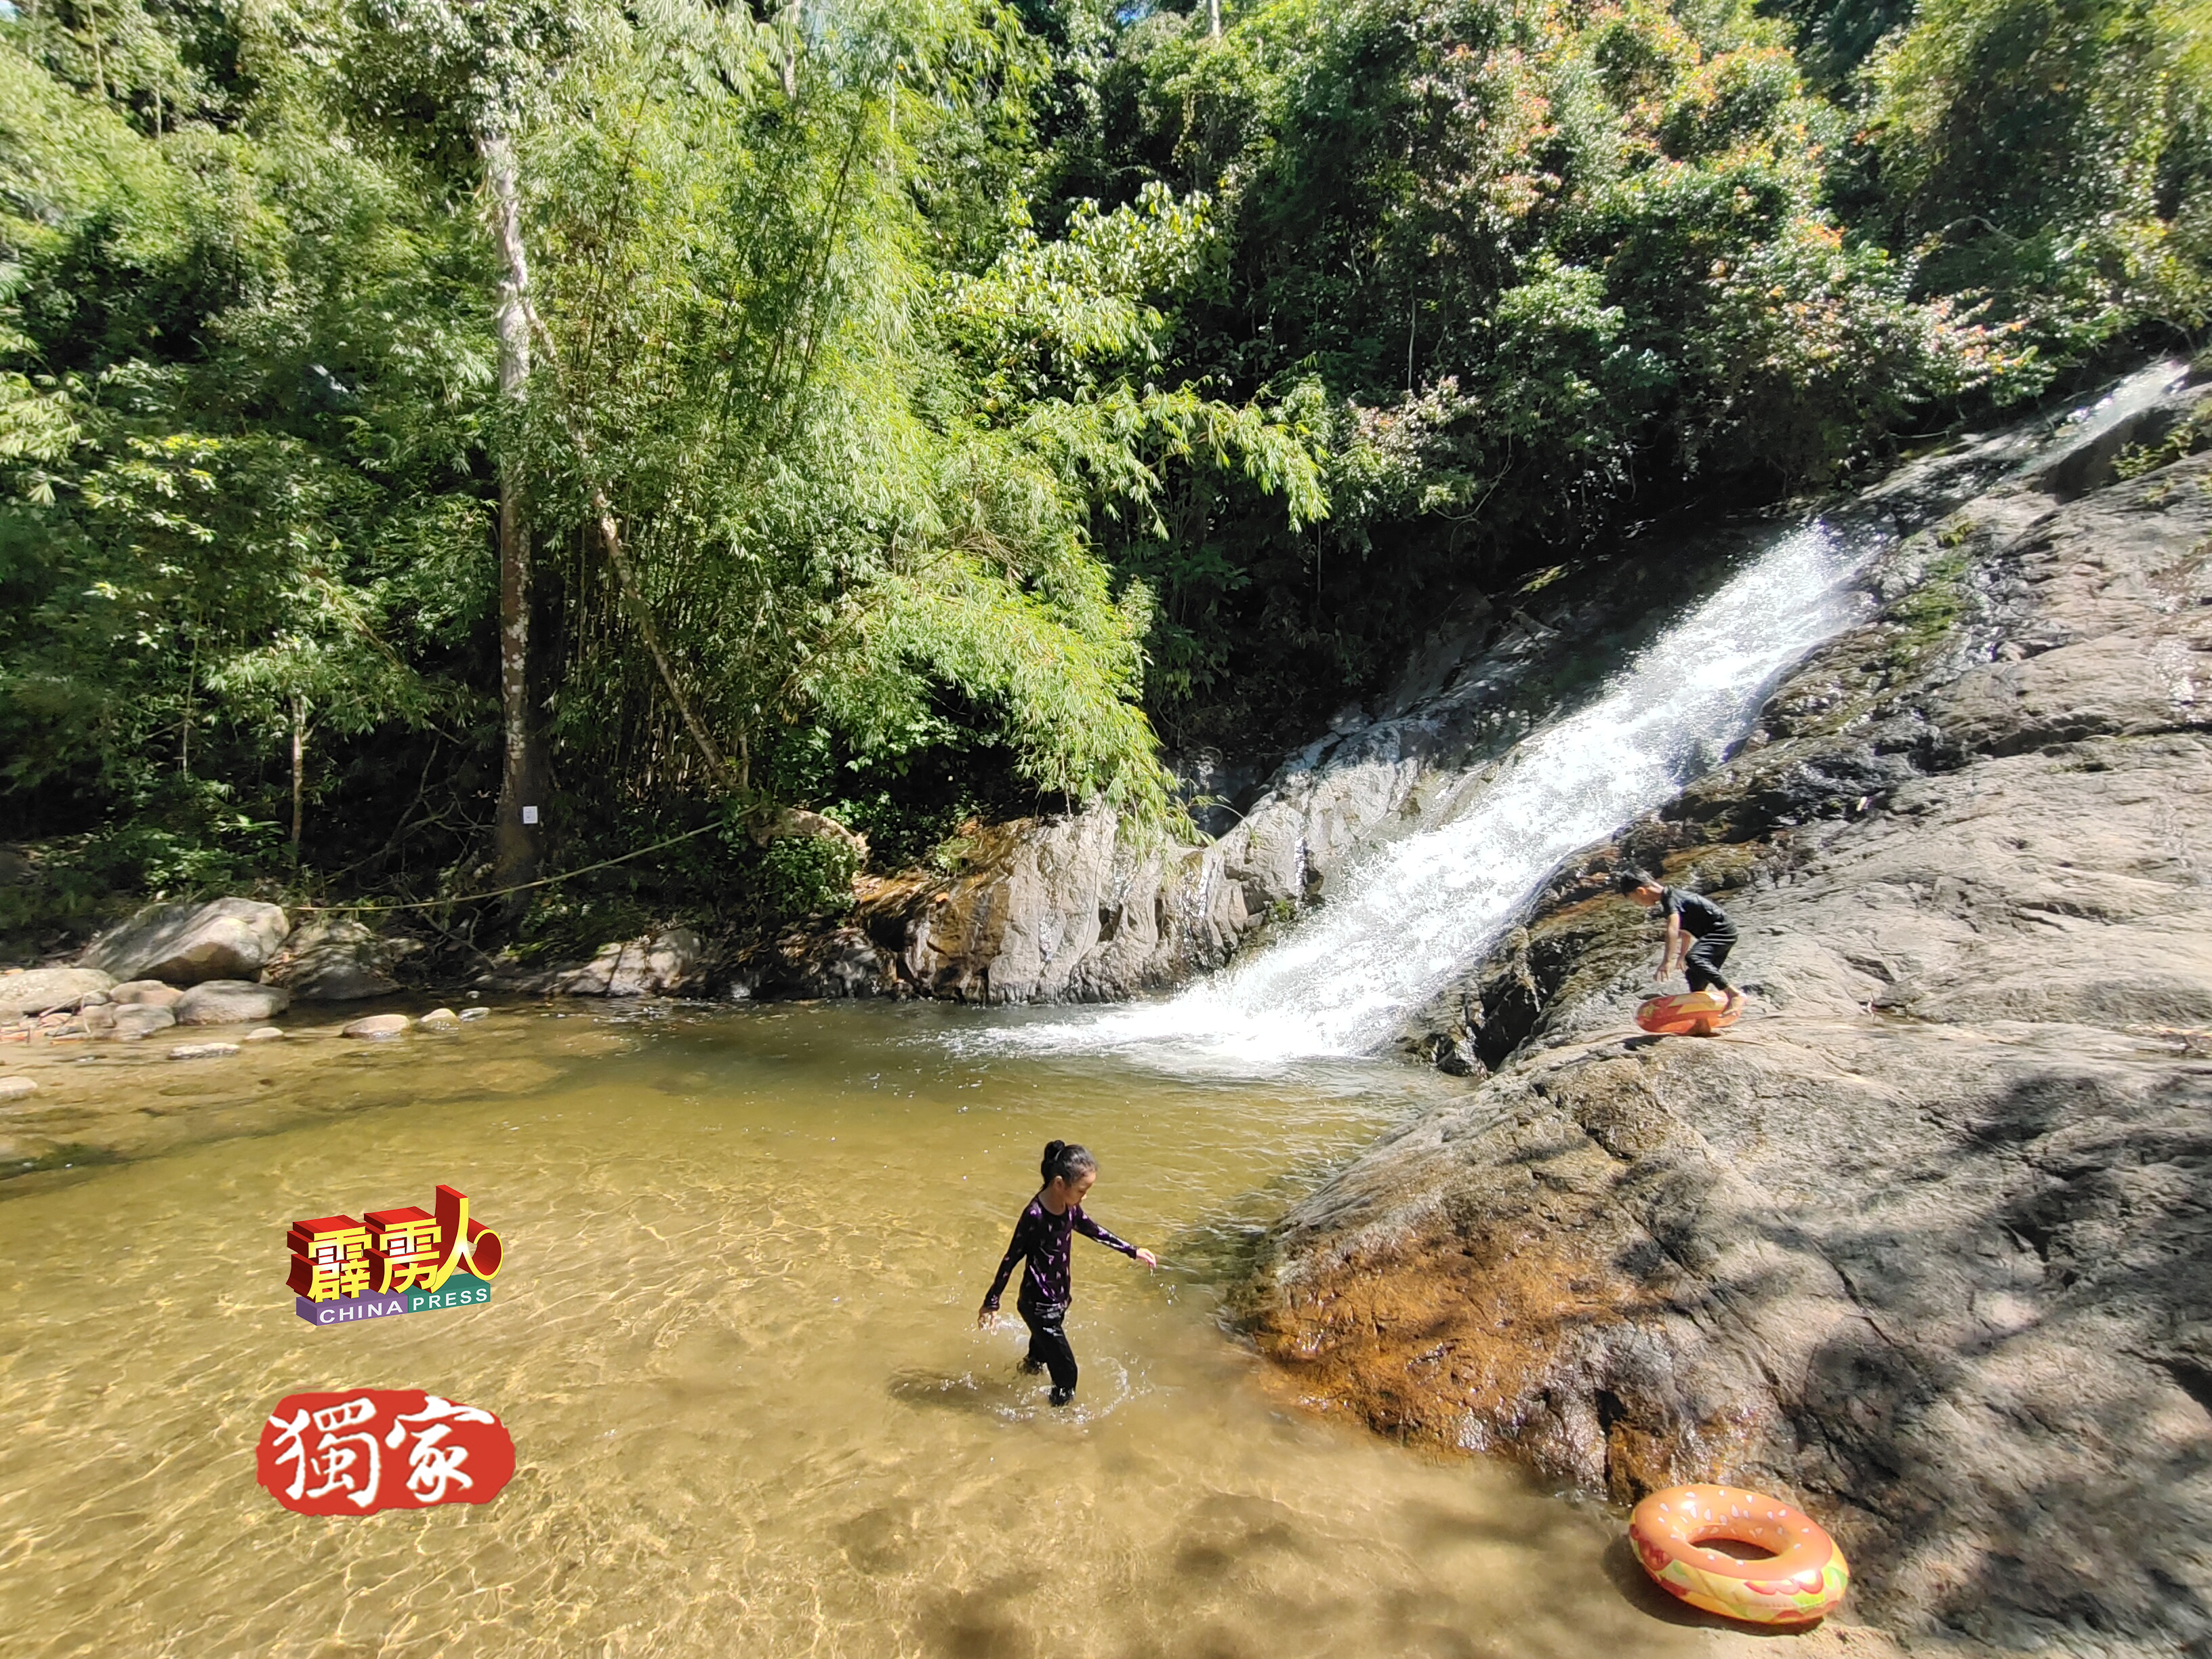 靠近加地小埠，隐蔽着一座美丽的瀑布，当地人称为柏拉呼瀑布，附近华人则称之“加地28碑”瀑布。